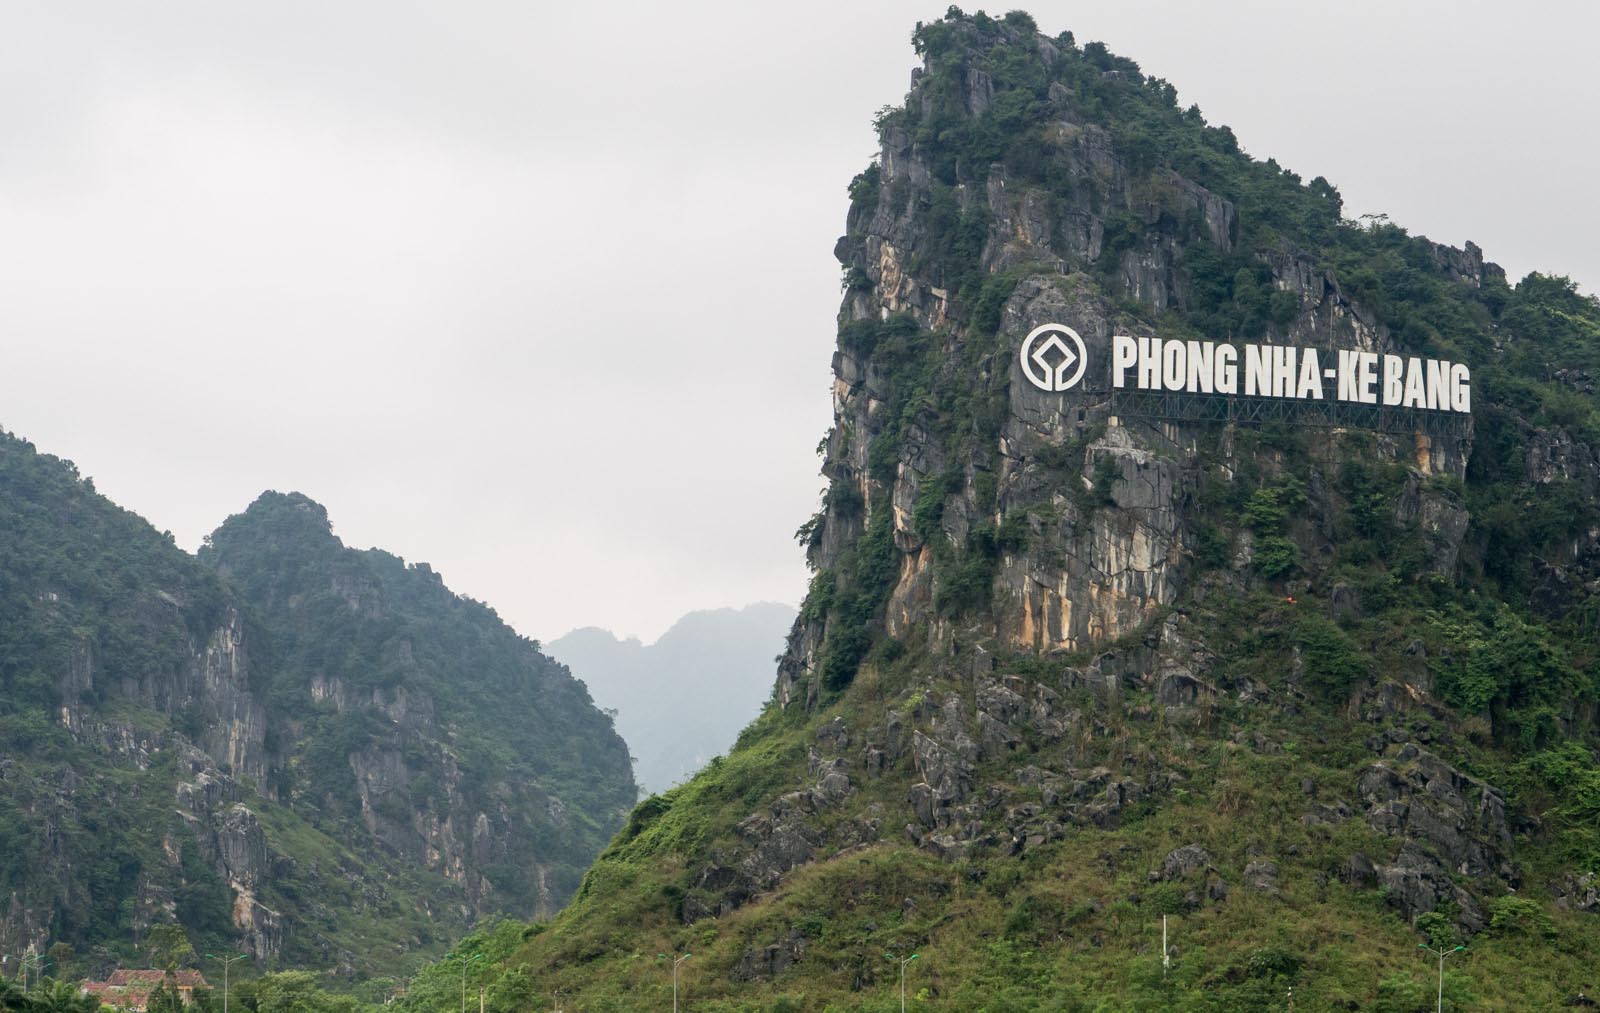 Vườn quốc gia Phong Nha Kẻ Bàng là một điểm du lịch hấp dẫn của tỉnh Quảng Bình, thu hút du khách trong và ngoài nước